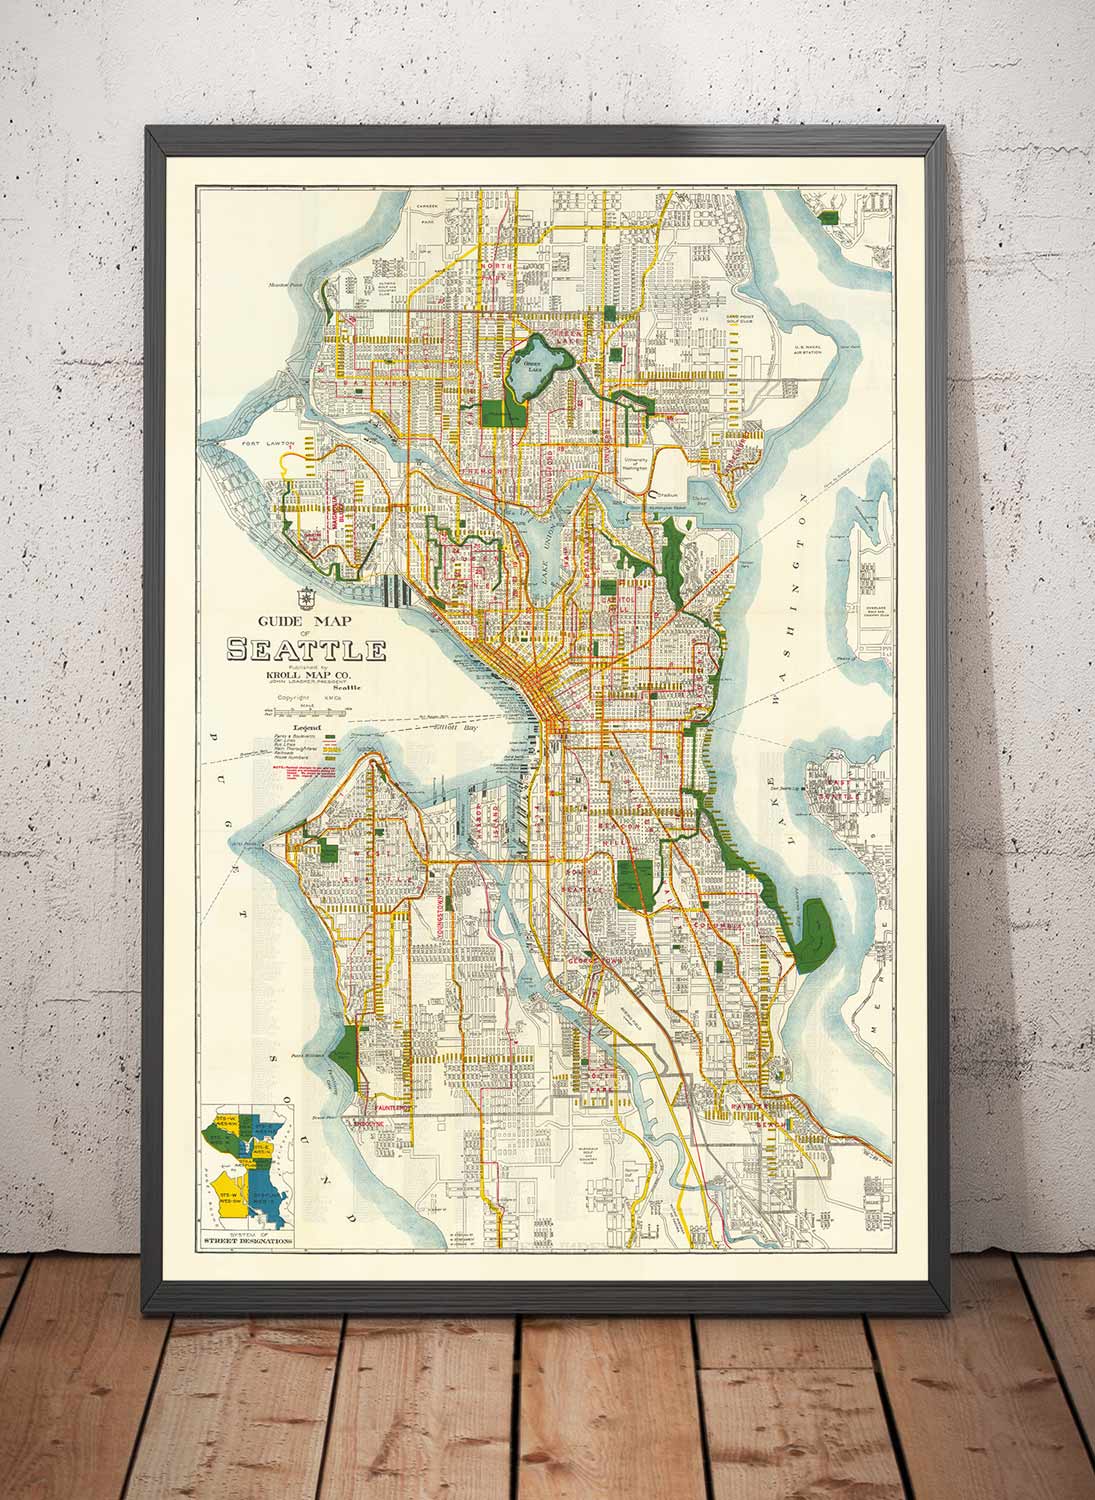 Seltene alte Karte von Seattle, Washington, 1929 - Downtown, Seen, Puget, Kanäle, Mercer Island